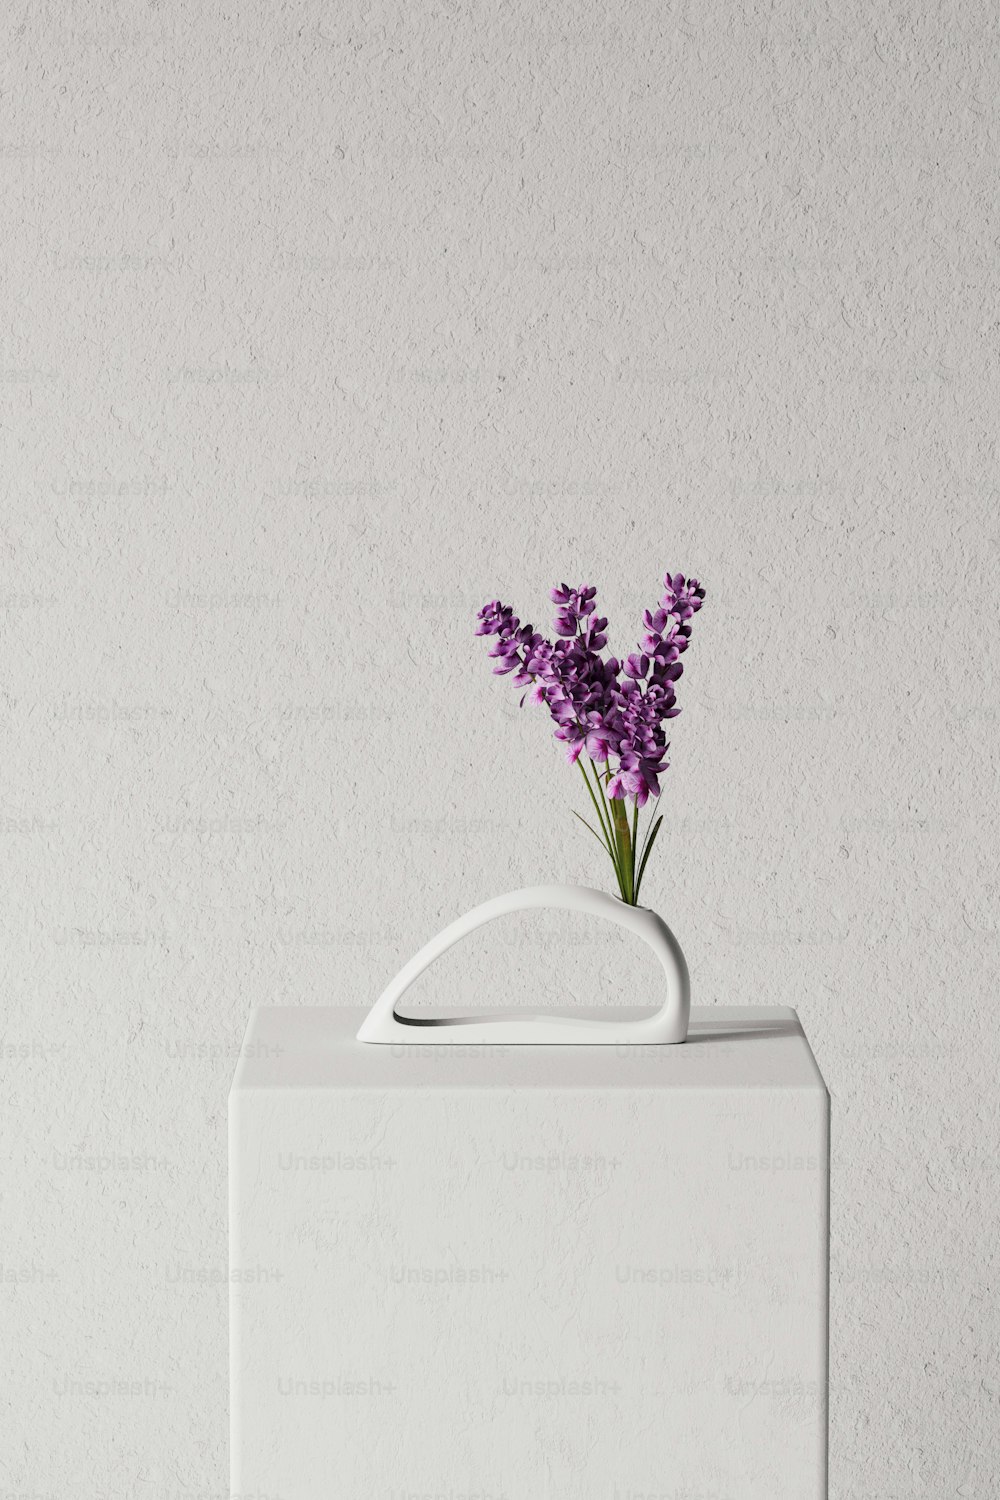 un vase blanc avec des fleurs violettes dedans